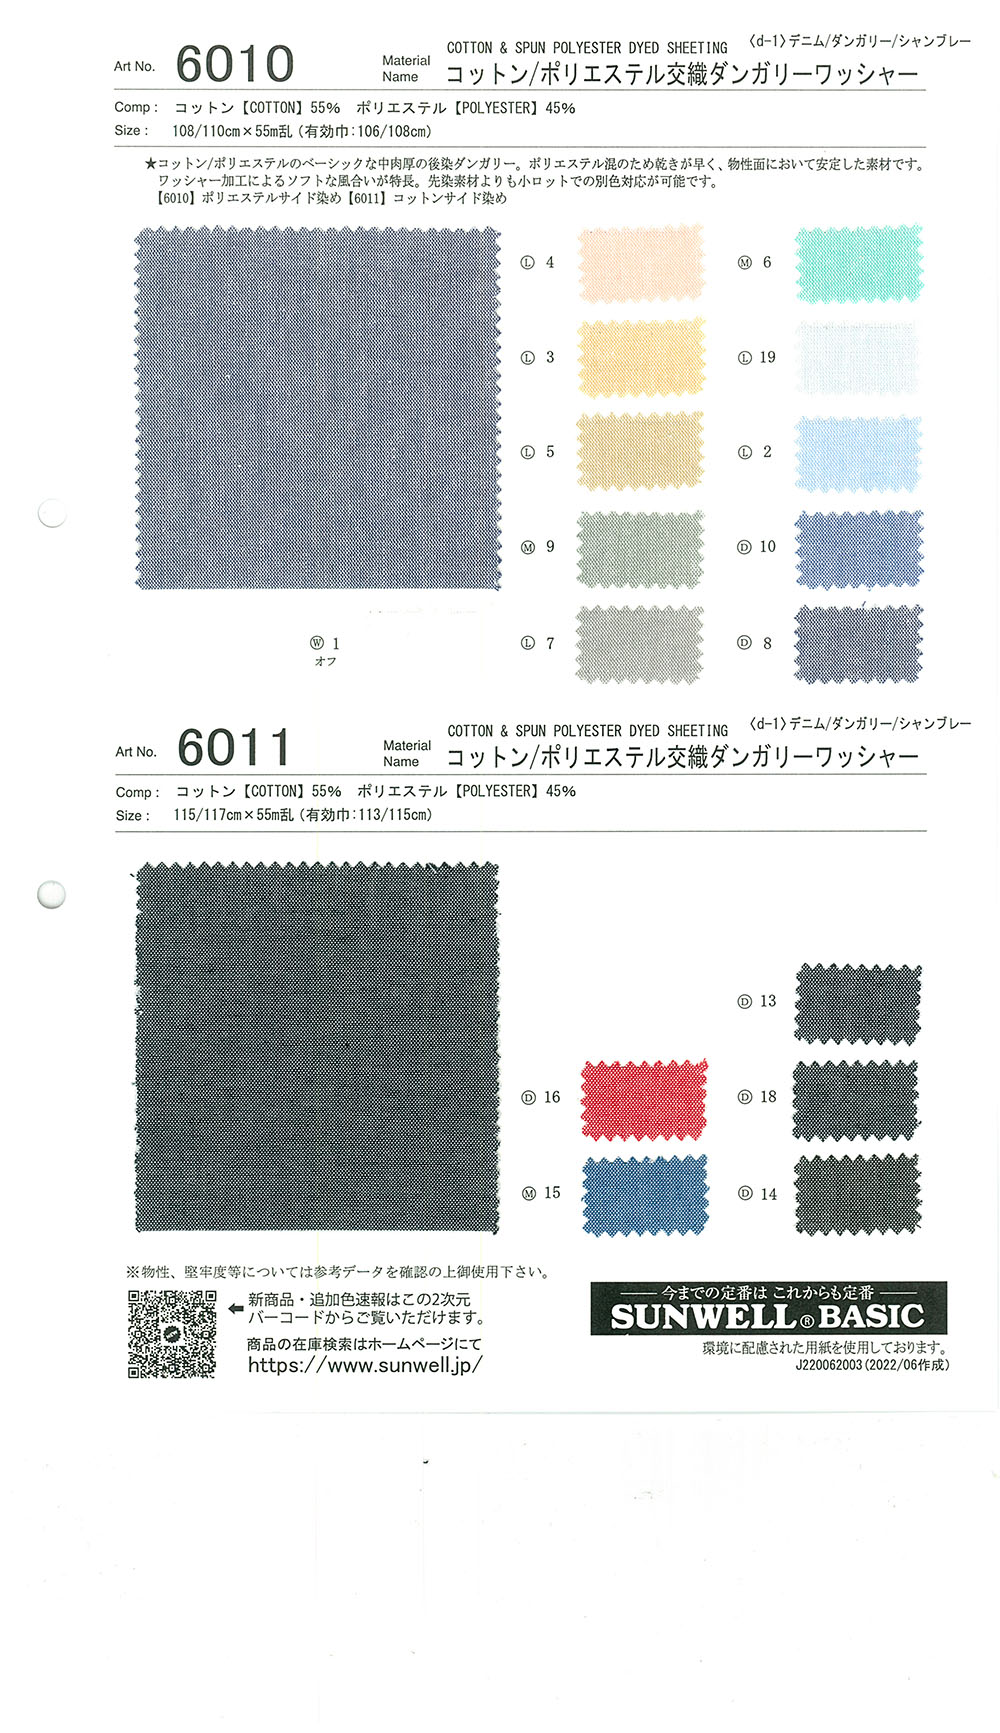 6011 带水洗的棉/聚酯纤维混纺劳动布[面料] SUNWELL